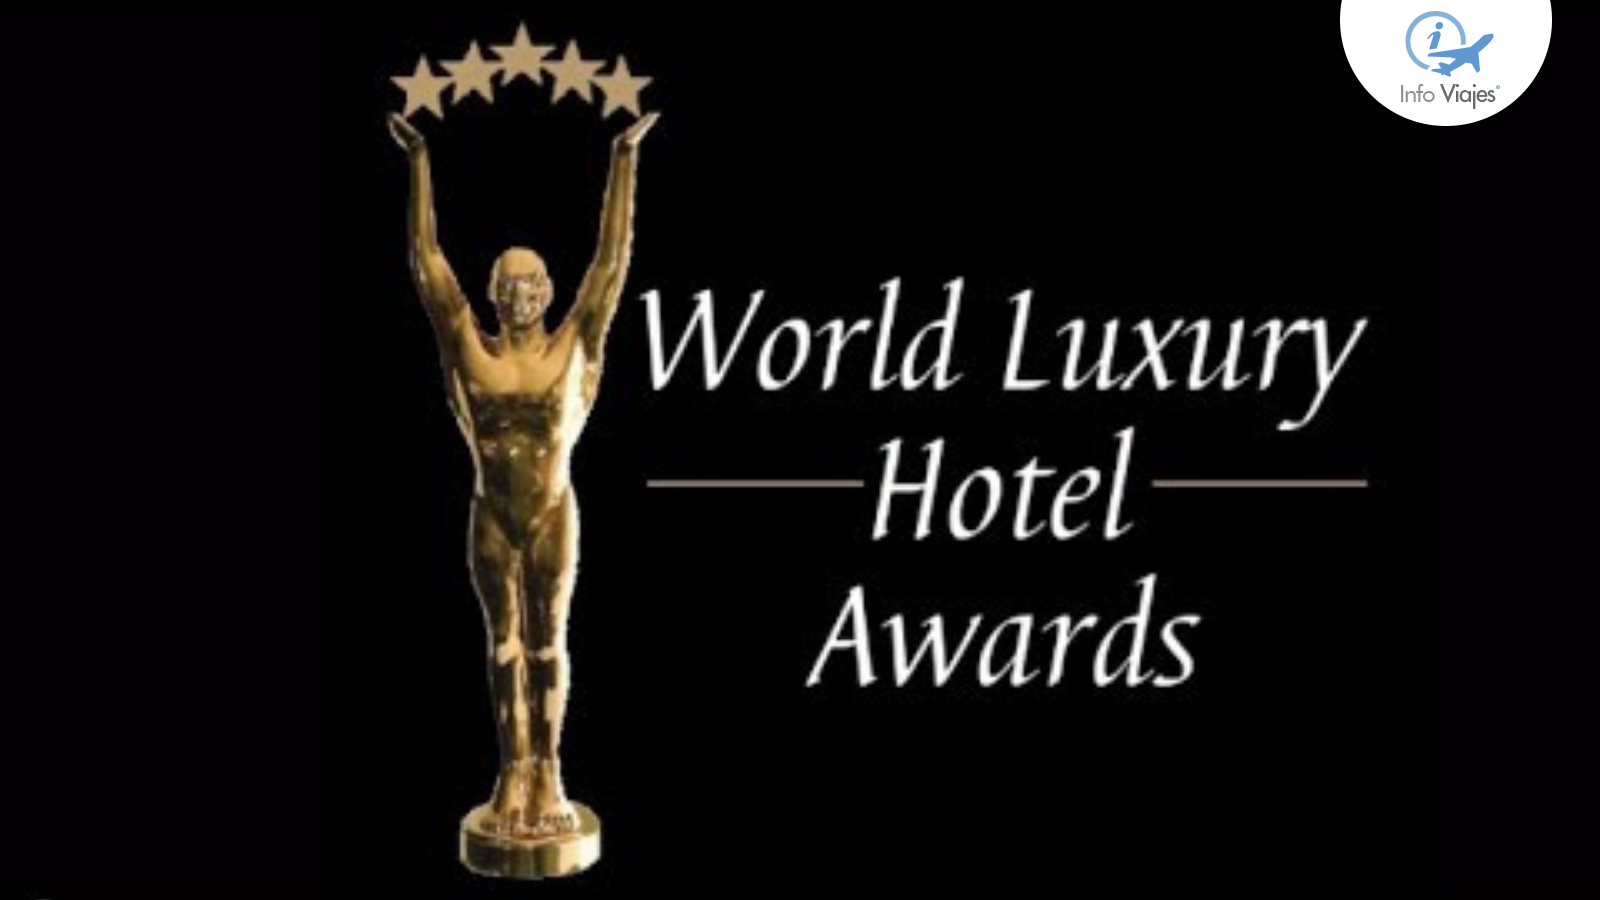 Conoce más sobre los "World Luxury Hotel Awards" Info Viajes